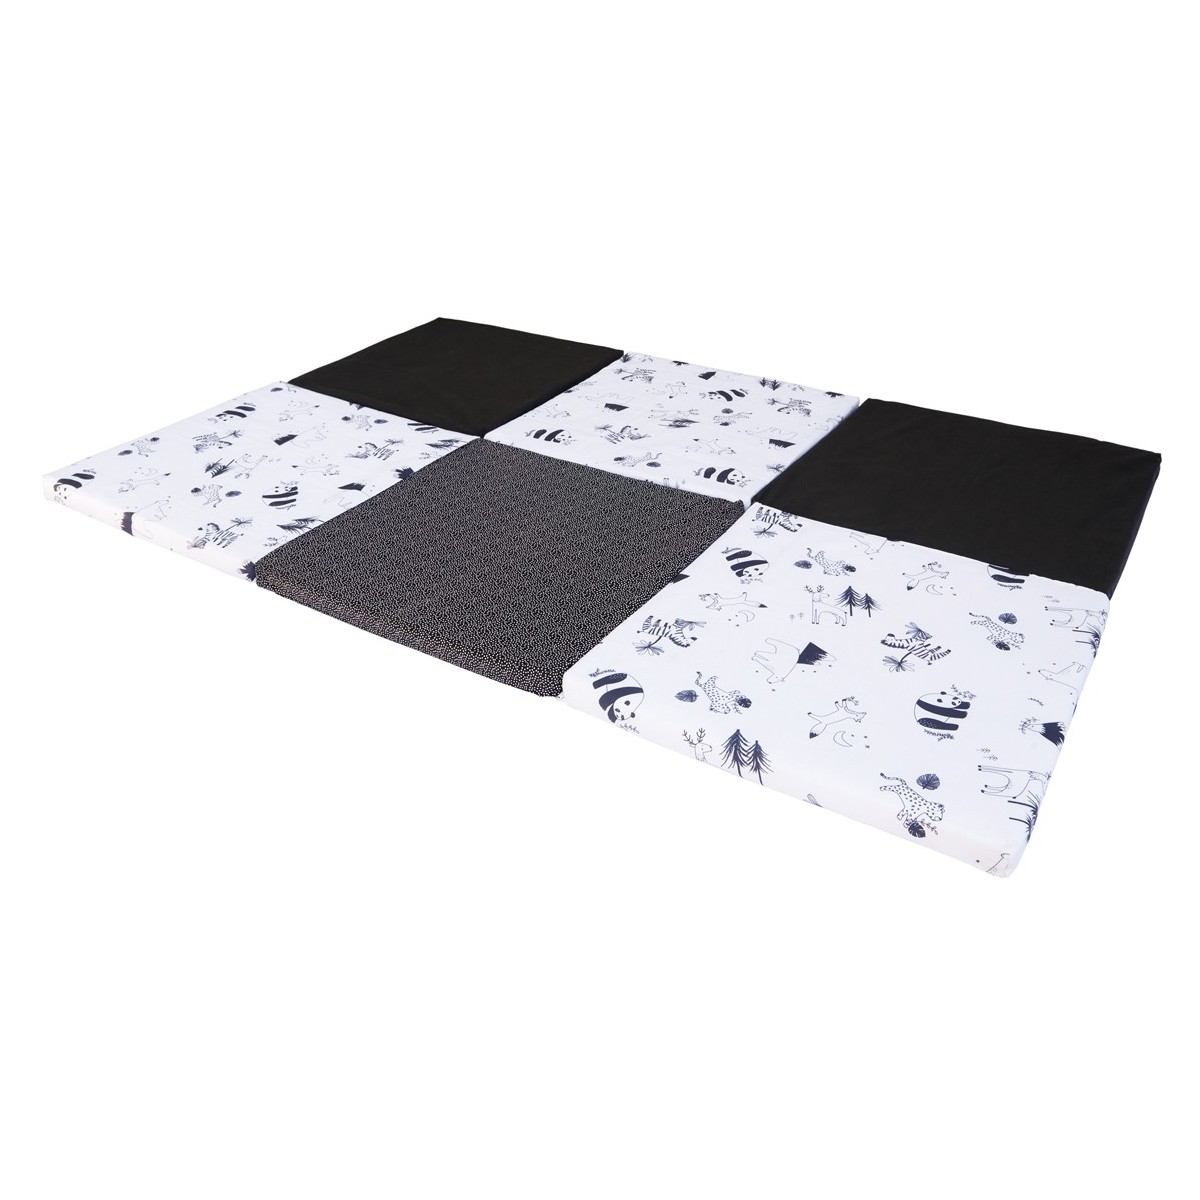 Playmat XL Black / white